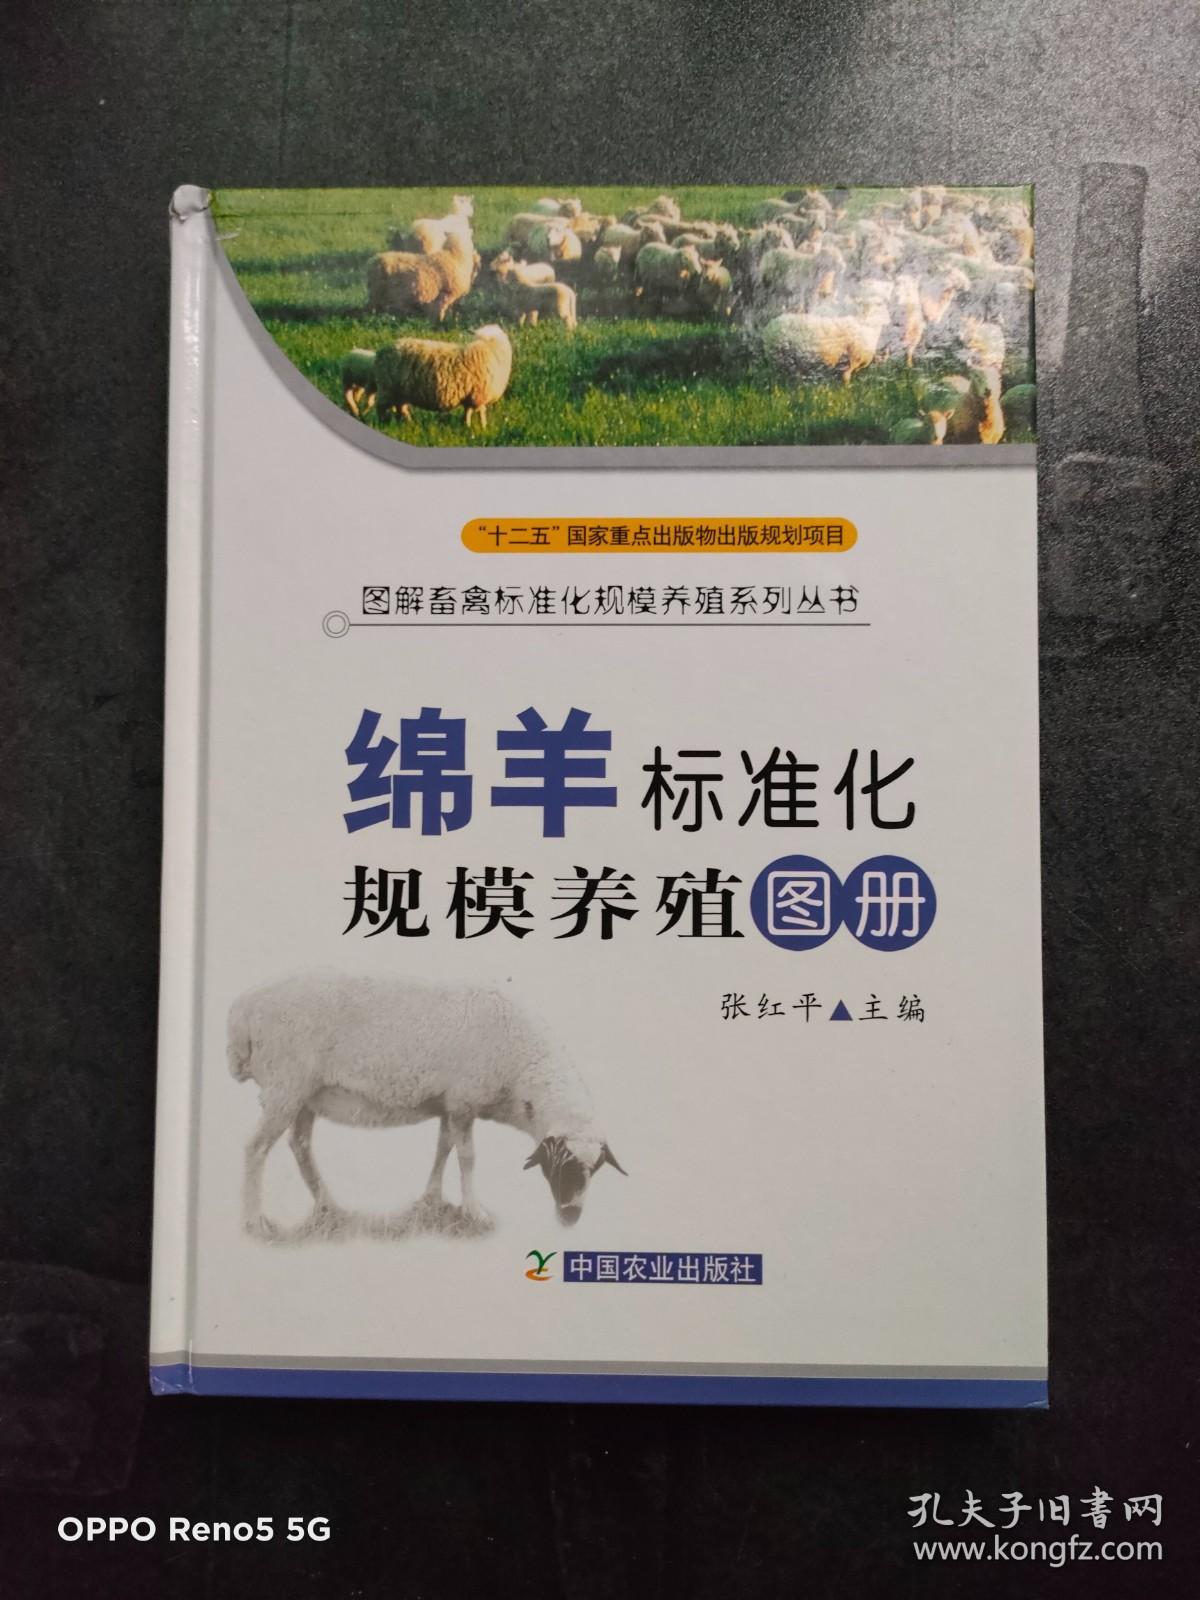 绵羊标准化规模养殖图册